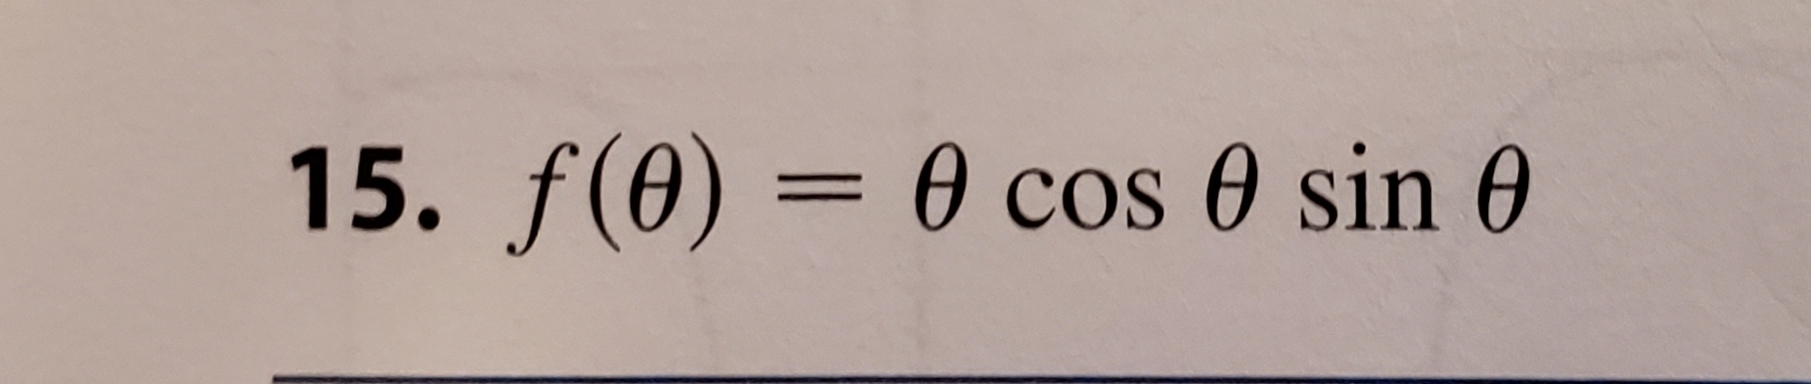 0 cos 0 sin 0
15. f(0)
